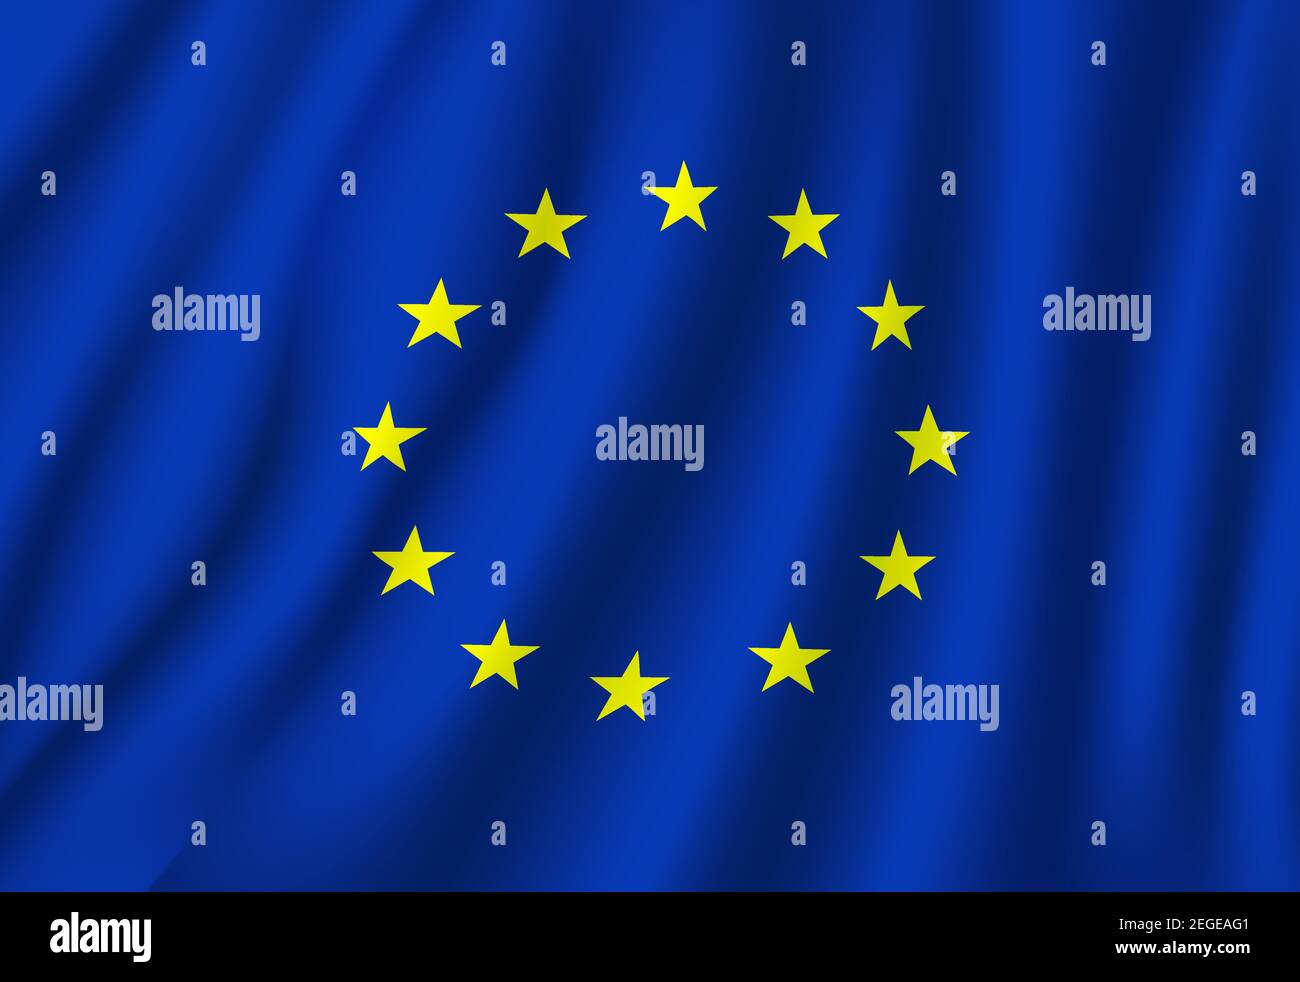 Drapeau de l'Union européenne sur tissu ondulé. Vector drapeau officiel de l'UE ou du Conseil de l'Europe et symbole des étoiles jaunes dorées et fond bleu sur le drapeau Illustration de Vecteur